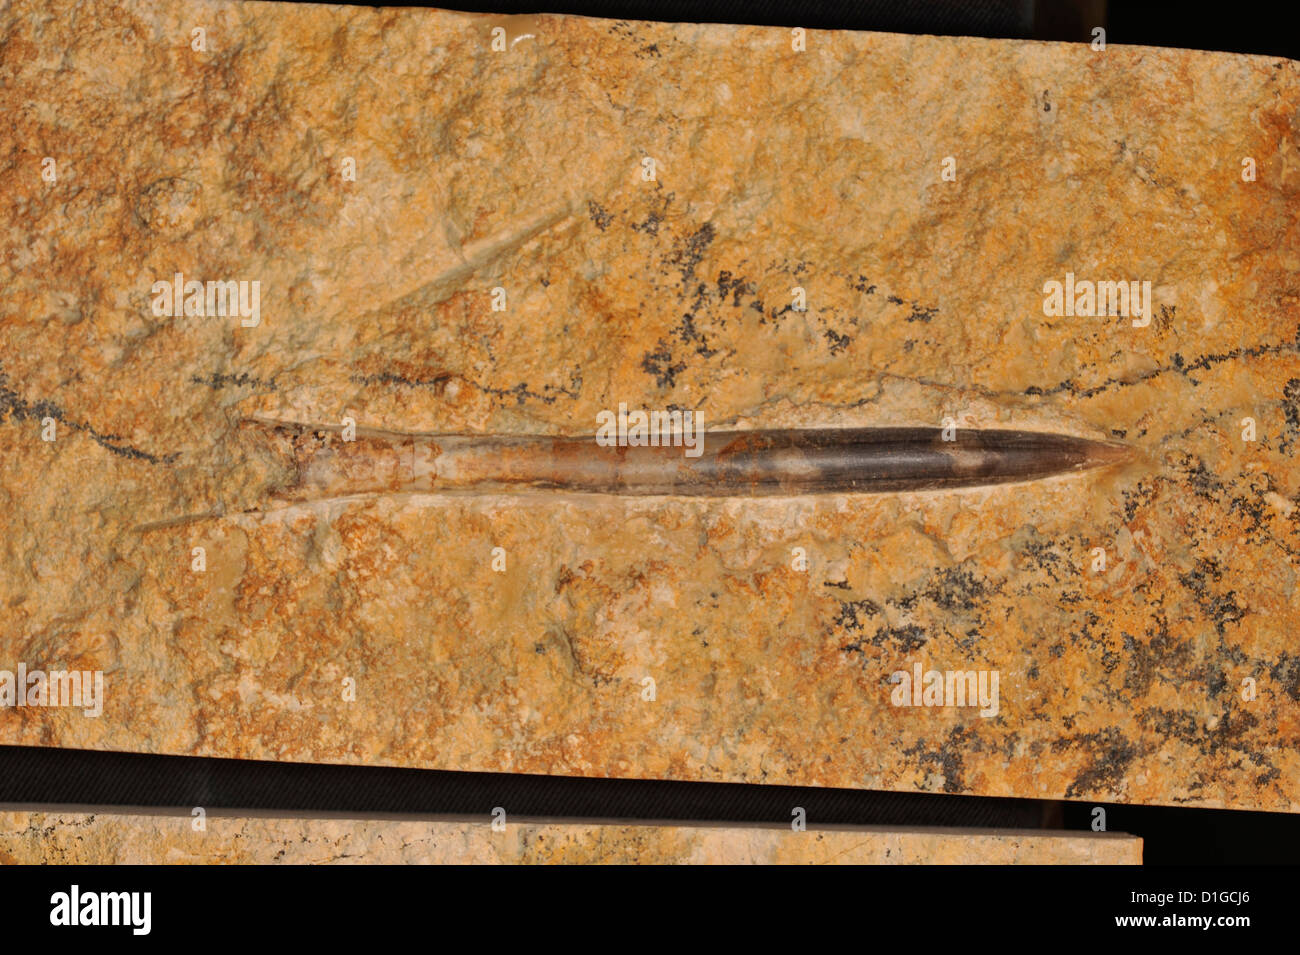 Fossilen Tintenfisch Gladius, Architeuthidae, Mollusken Kopffüßer horizontale Roberto Nistri Tintenfische tierische exitint Stockfoto